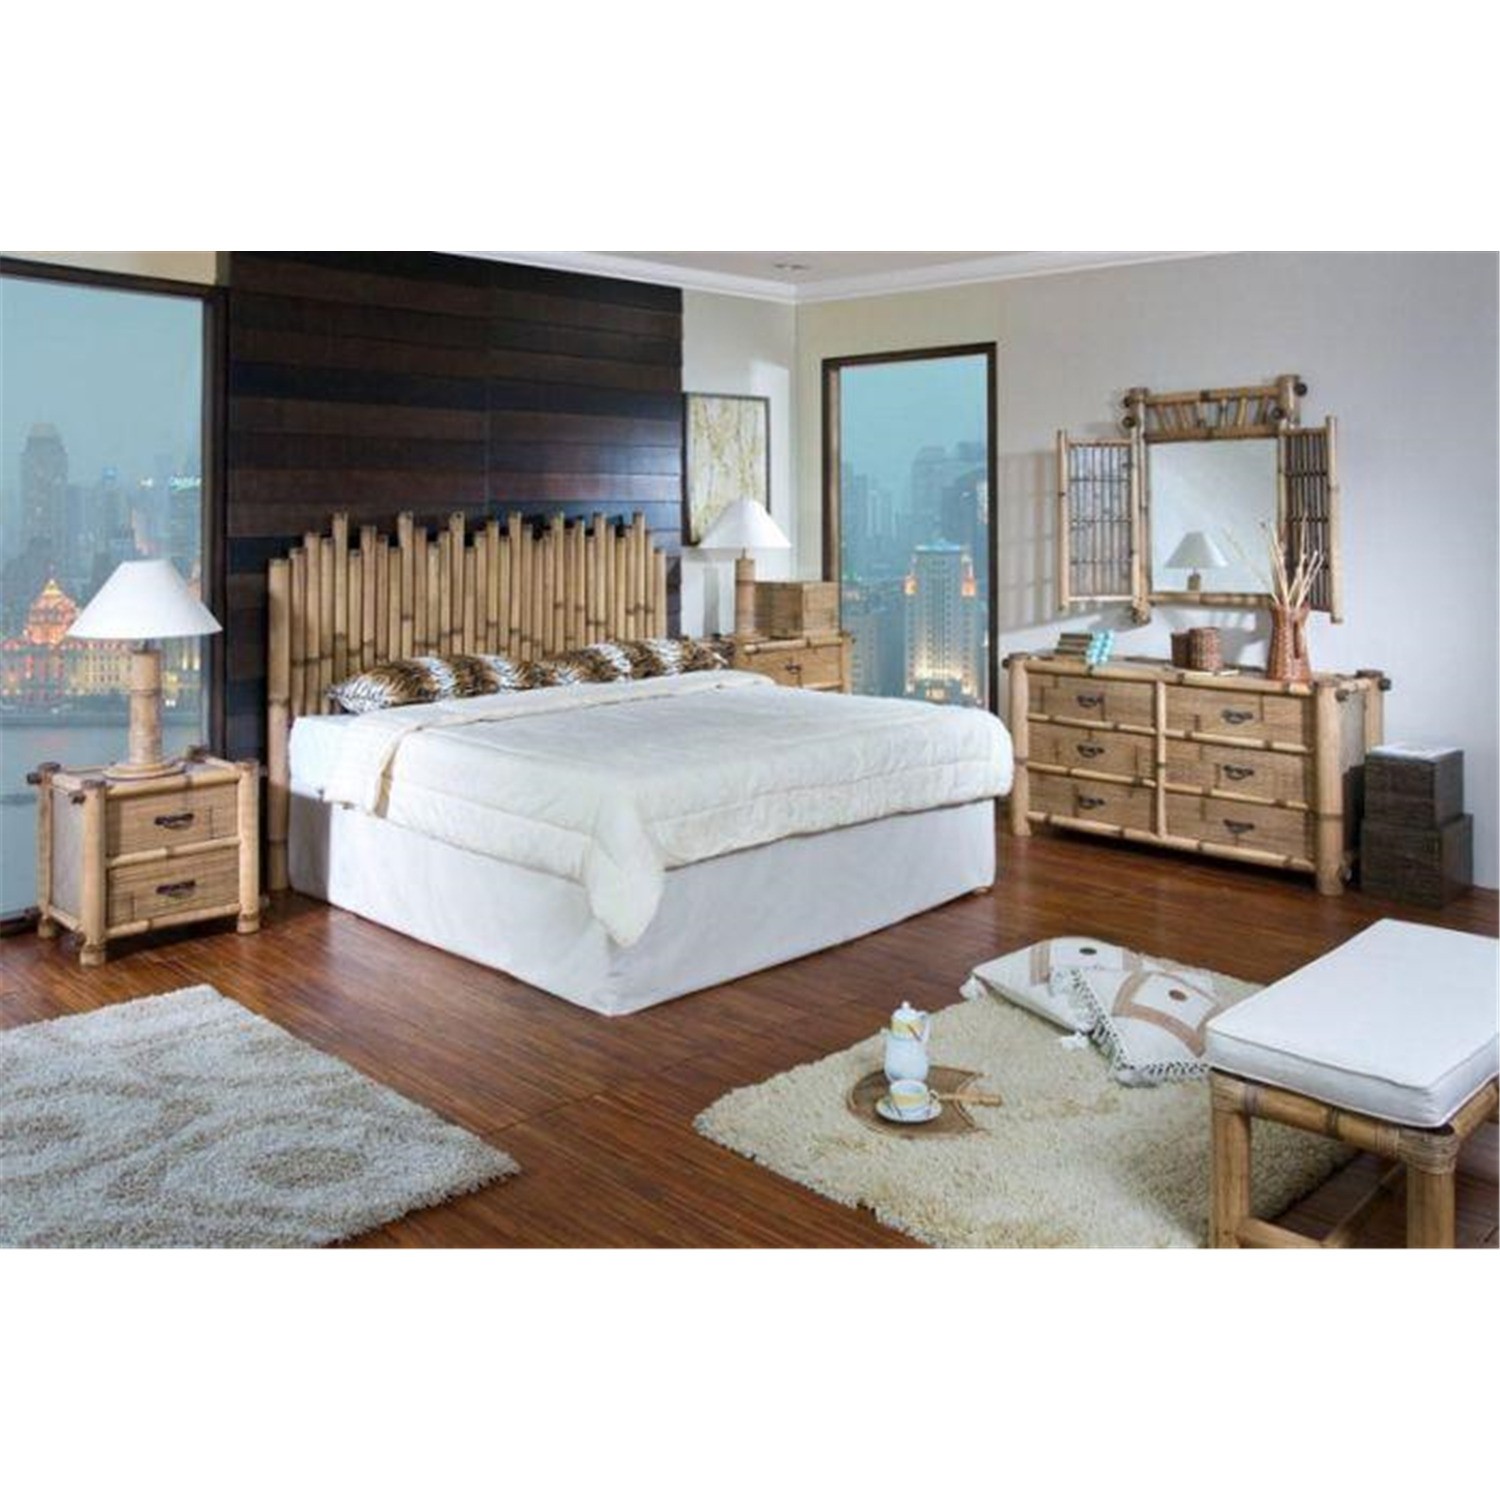 Havana bamboo bedroom set from 1698 00 to 1833 00